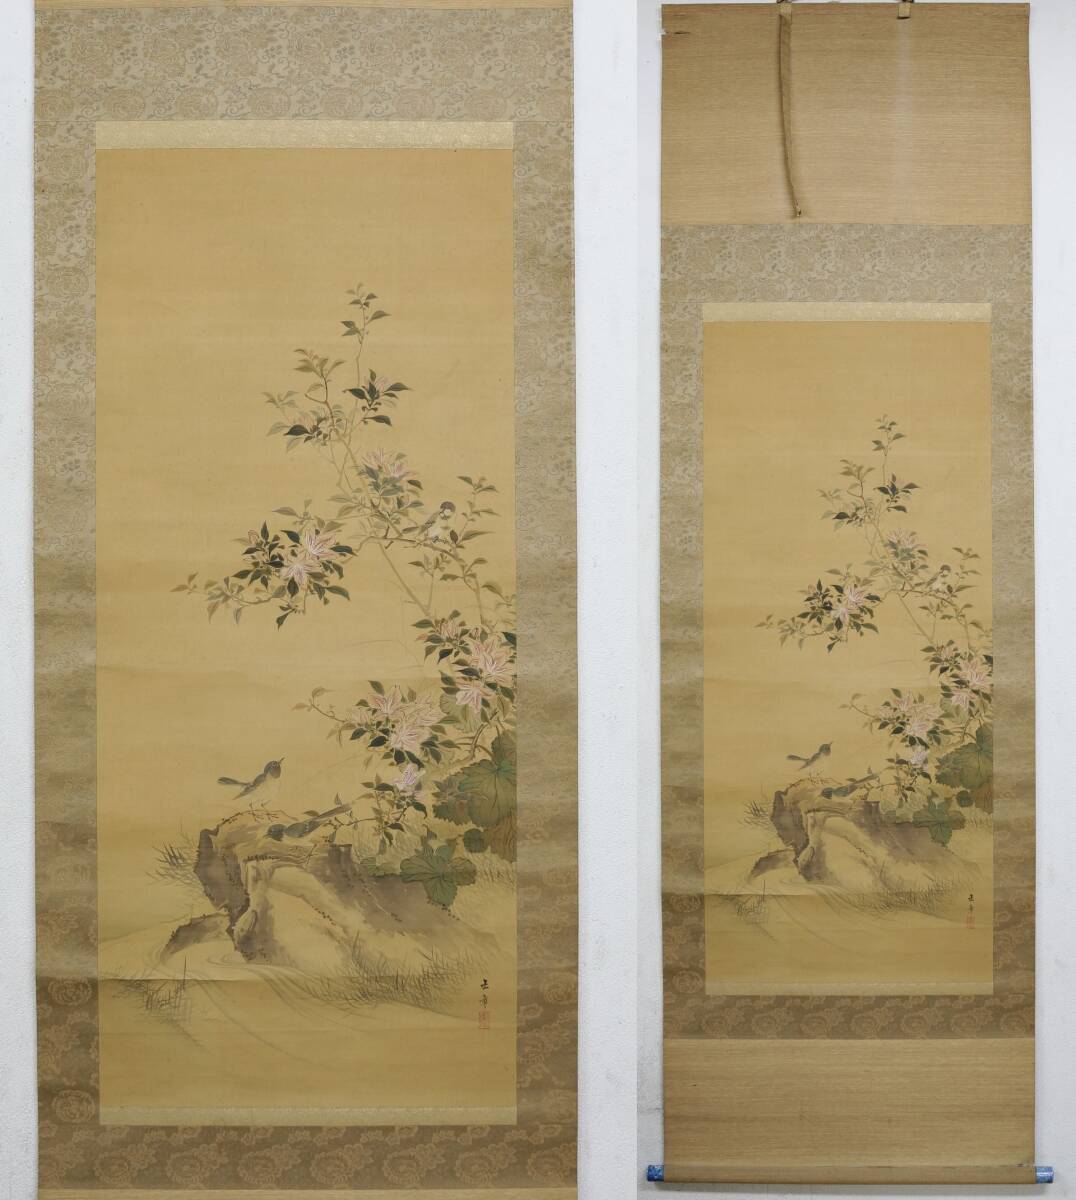 【模写】183 川端玉章  晩春之図  花鳥図 中国画  日本画  時代掛軸 当箱の画像1